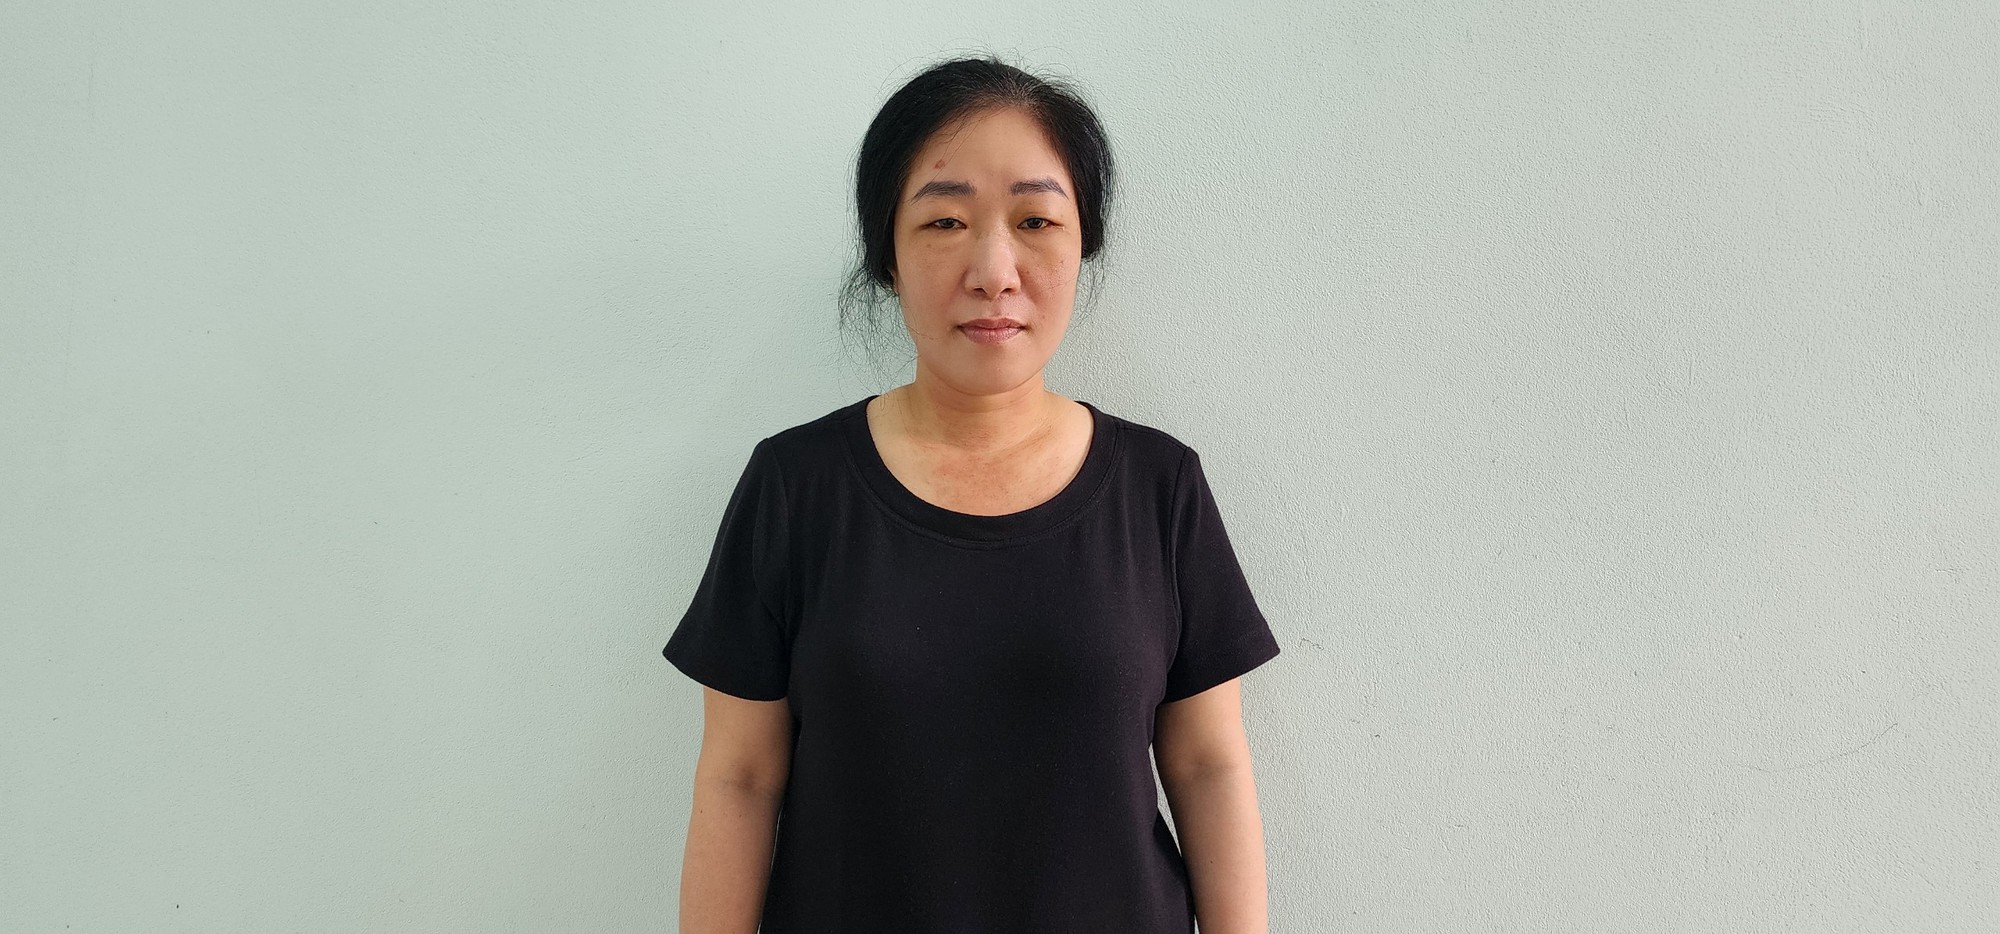 Nữ thủ quỹ bưu điện ở Kiên Giang đốt bỏ nhiều quần áo trước khi bị bắt - Ảnh 1.